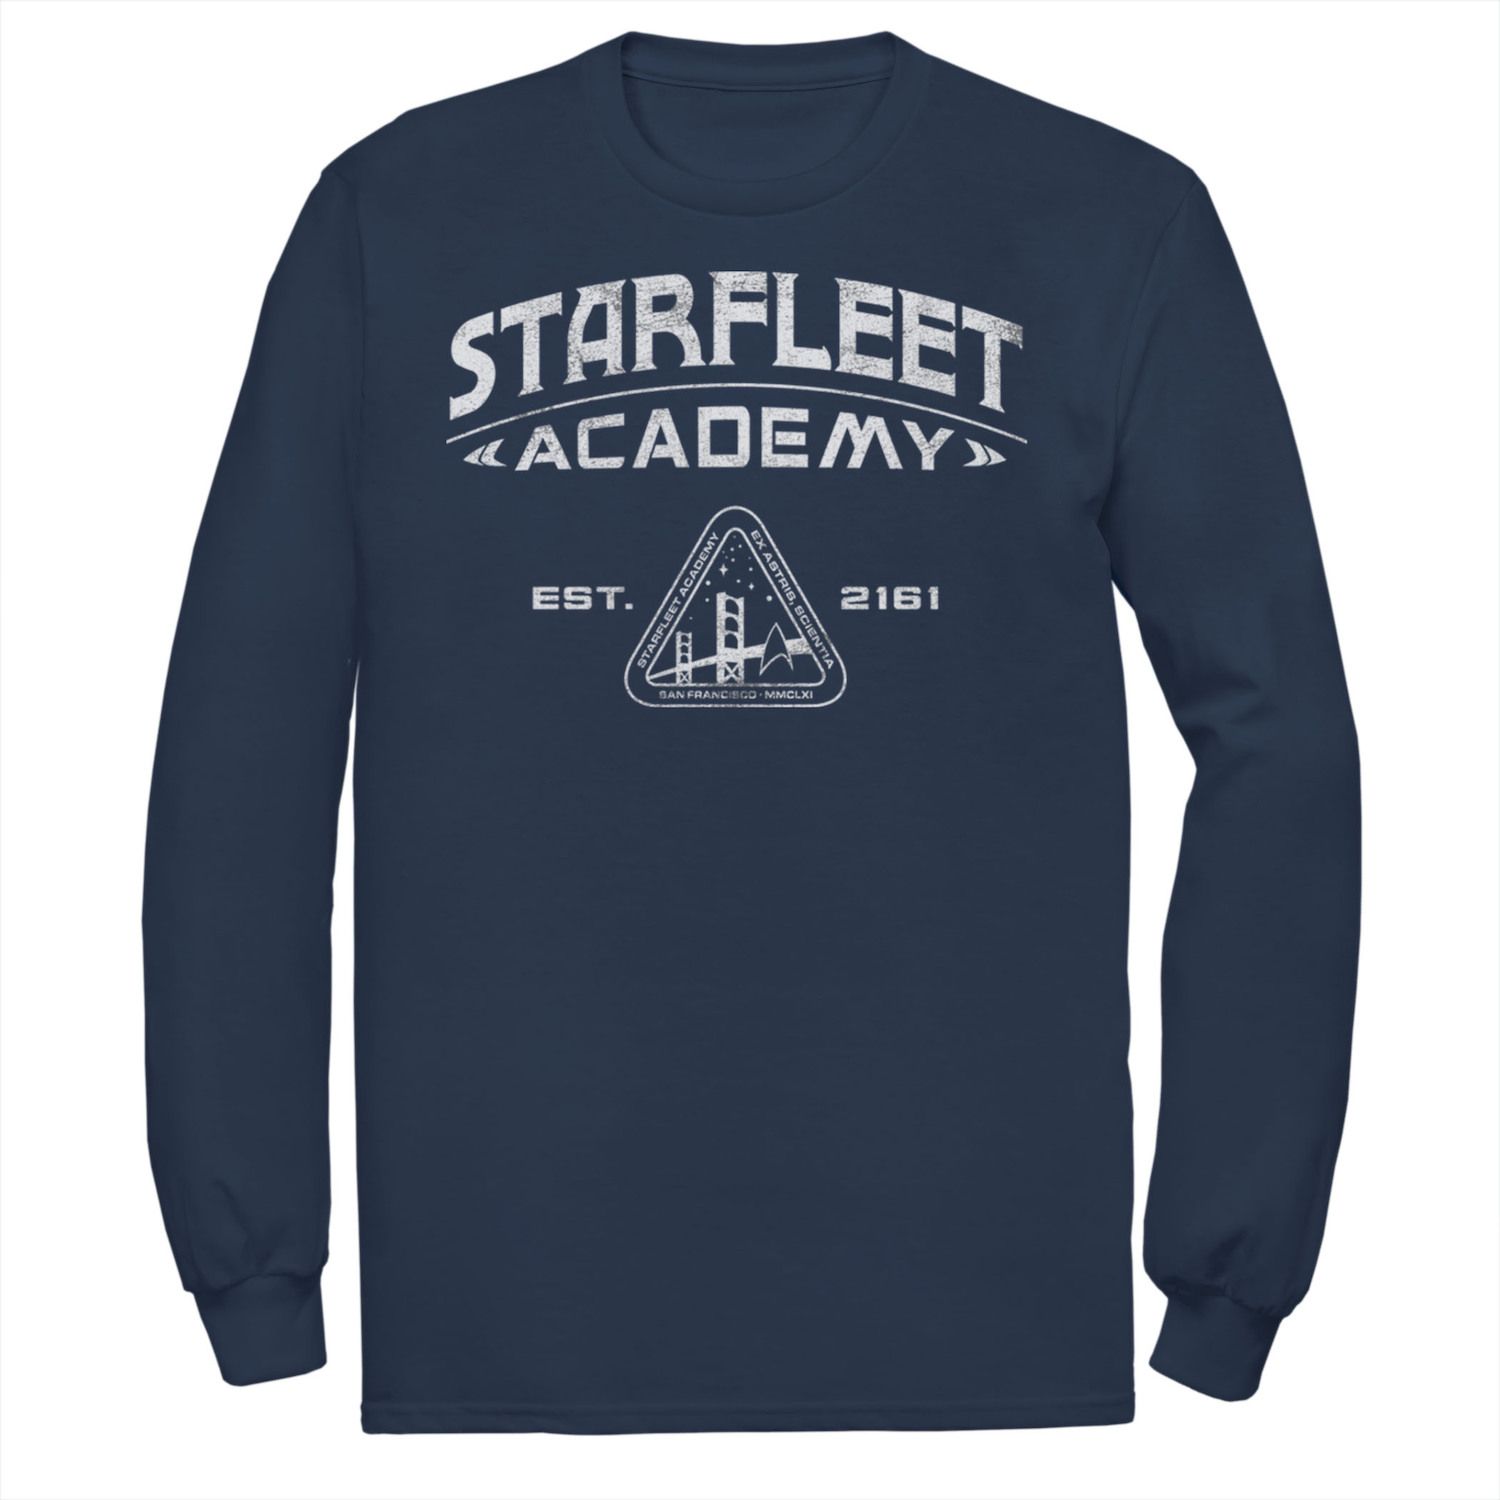 Мужская винтажная футболка Star Trek Starfleet Academy 2161 Licensed Character